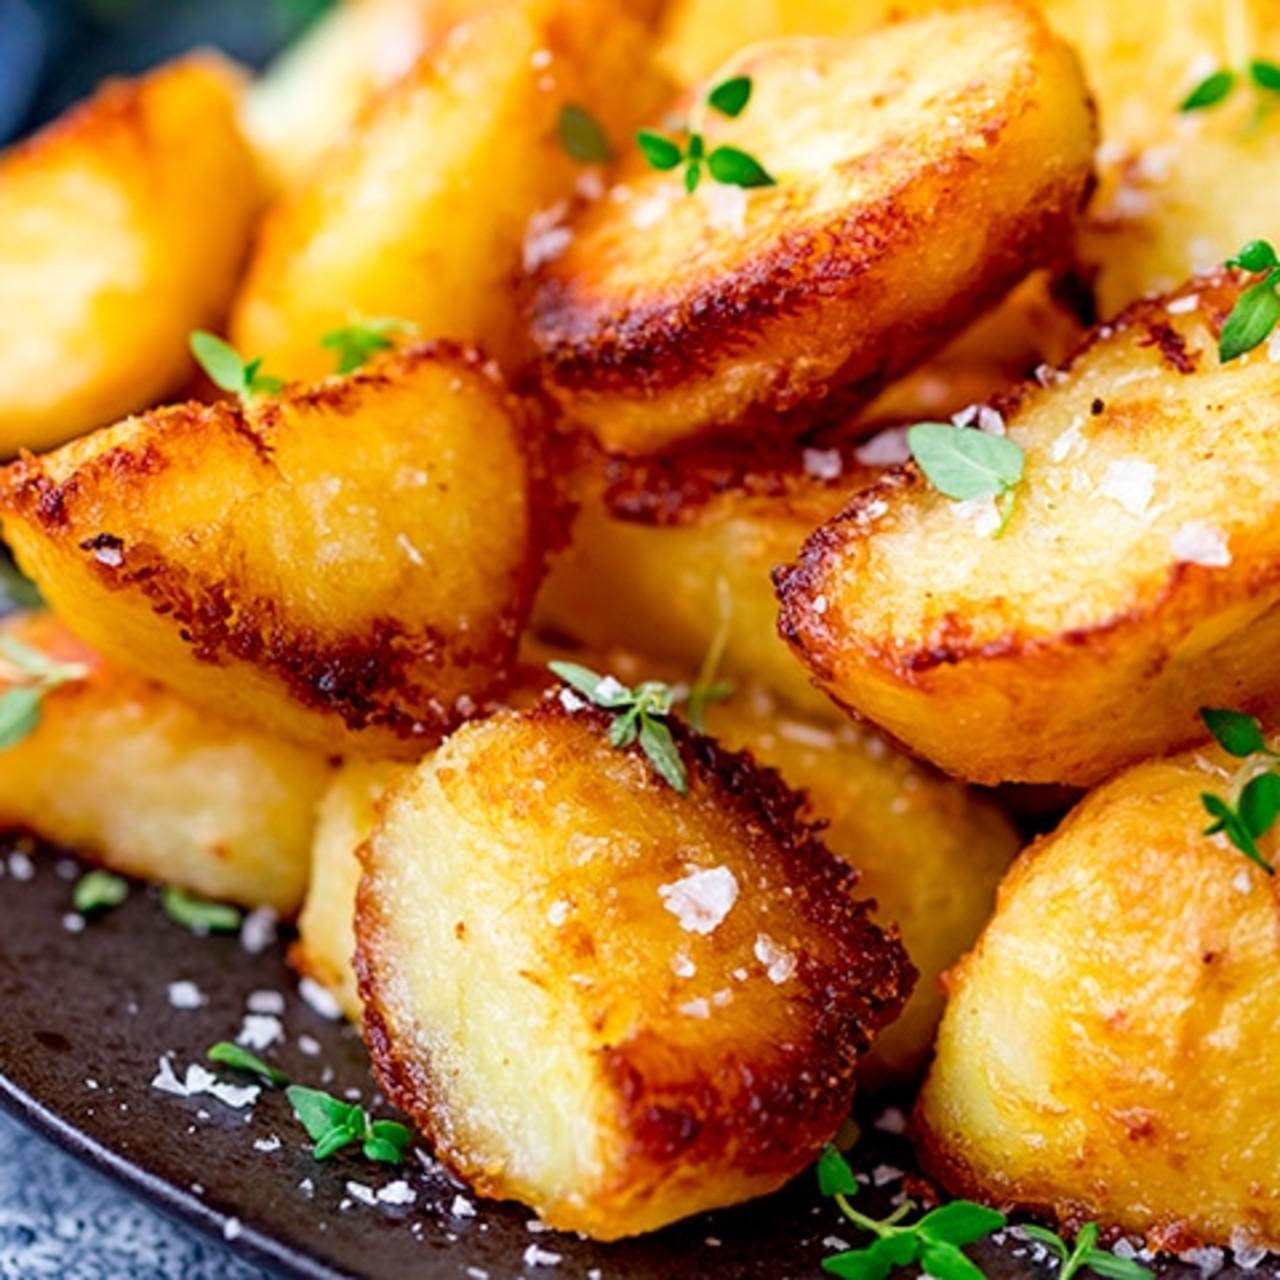 Potato dish. Картофель Криспи. Печеный картофель. Картофель на праздничный стол. Запеченный картофель Англия.